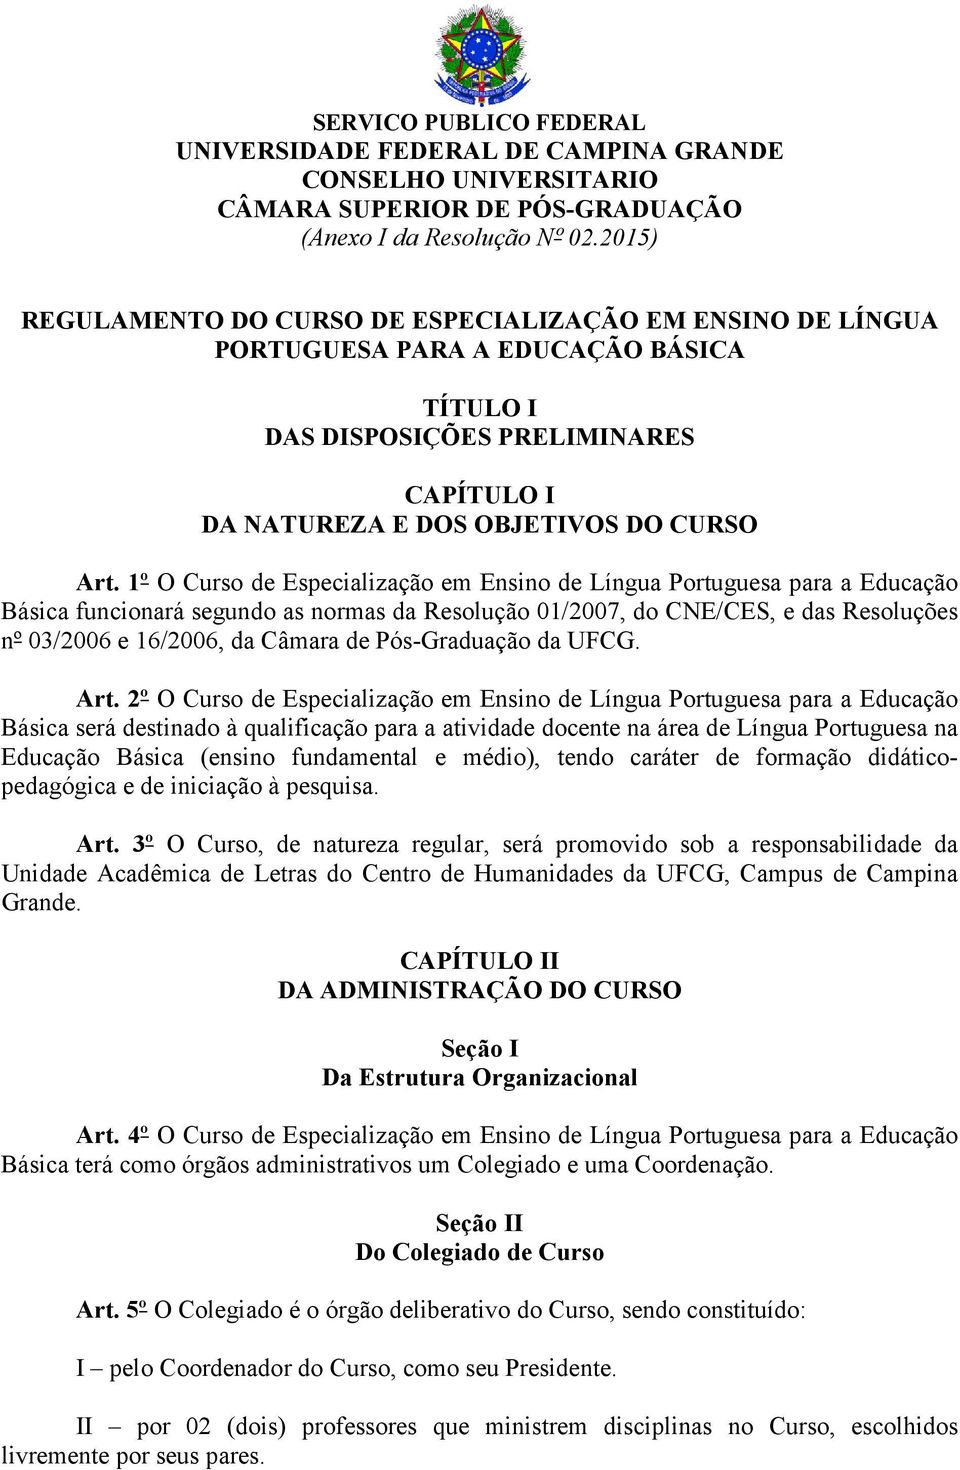 1º O Curso de Especialização em Ensino de Língua Portuguesa para a Educação Básica funcionará segundo as normas da Resolução 01/2007, do CNE/CES, e das Resoluções nº 03/2006 e 16/2006, da Câmara de